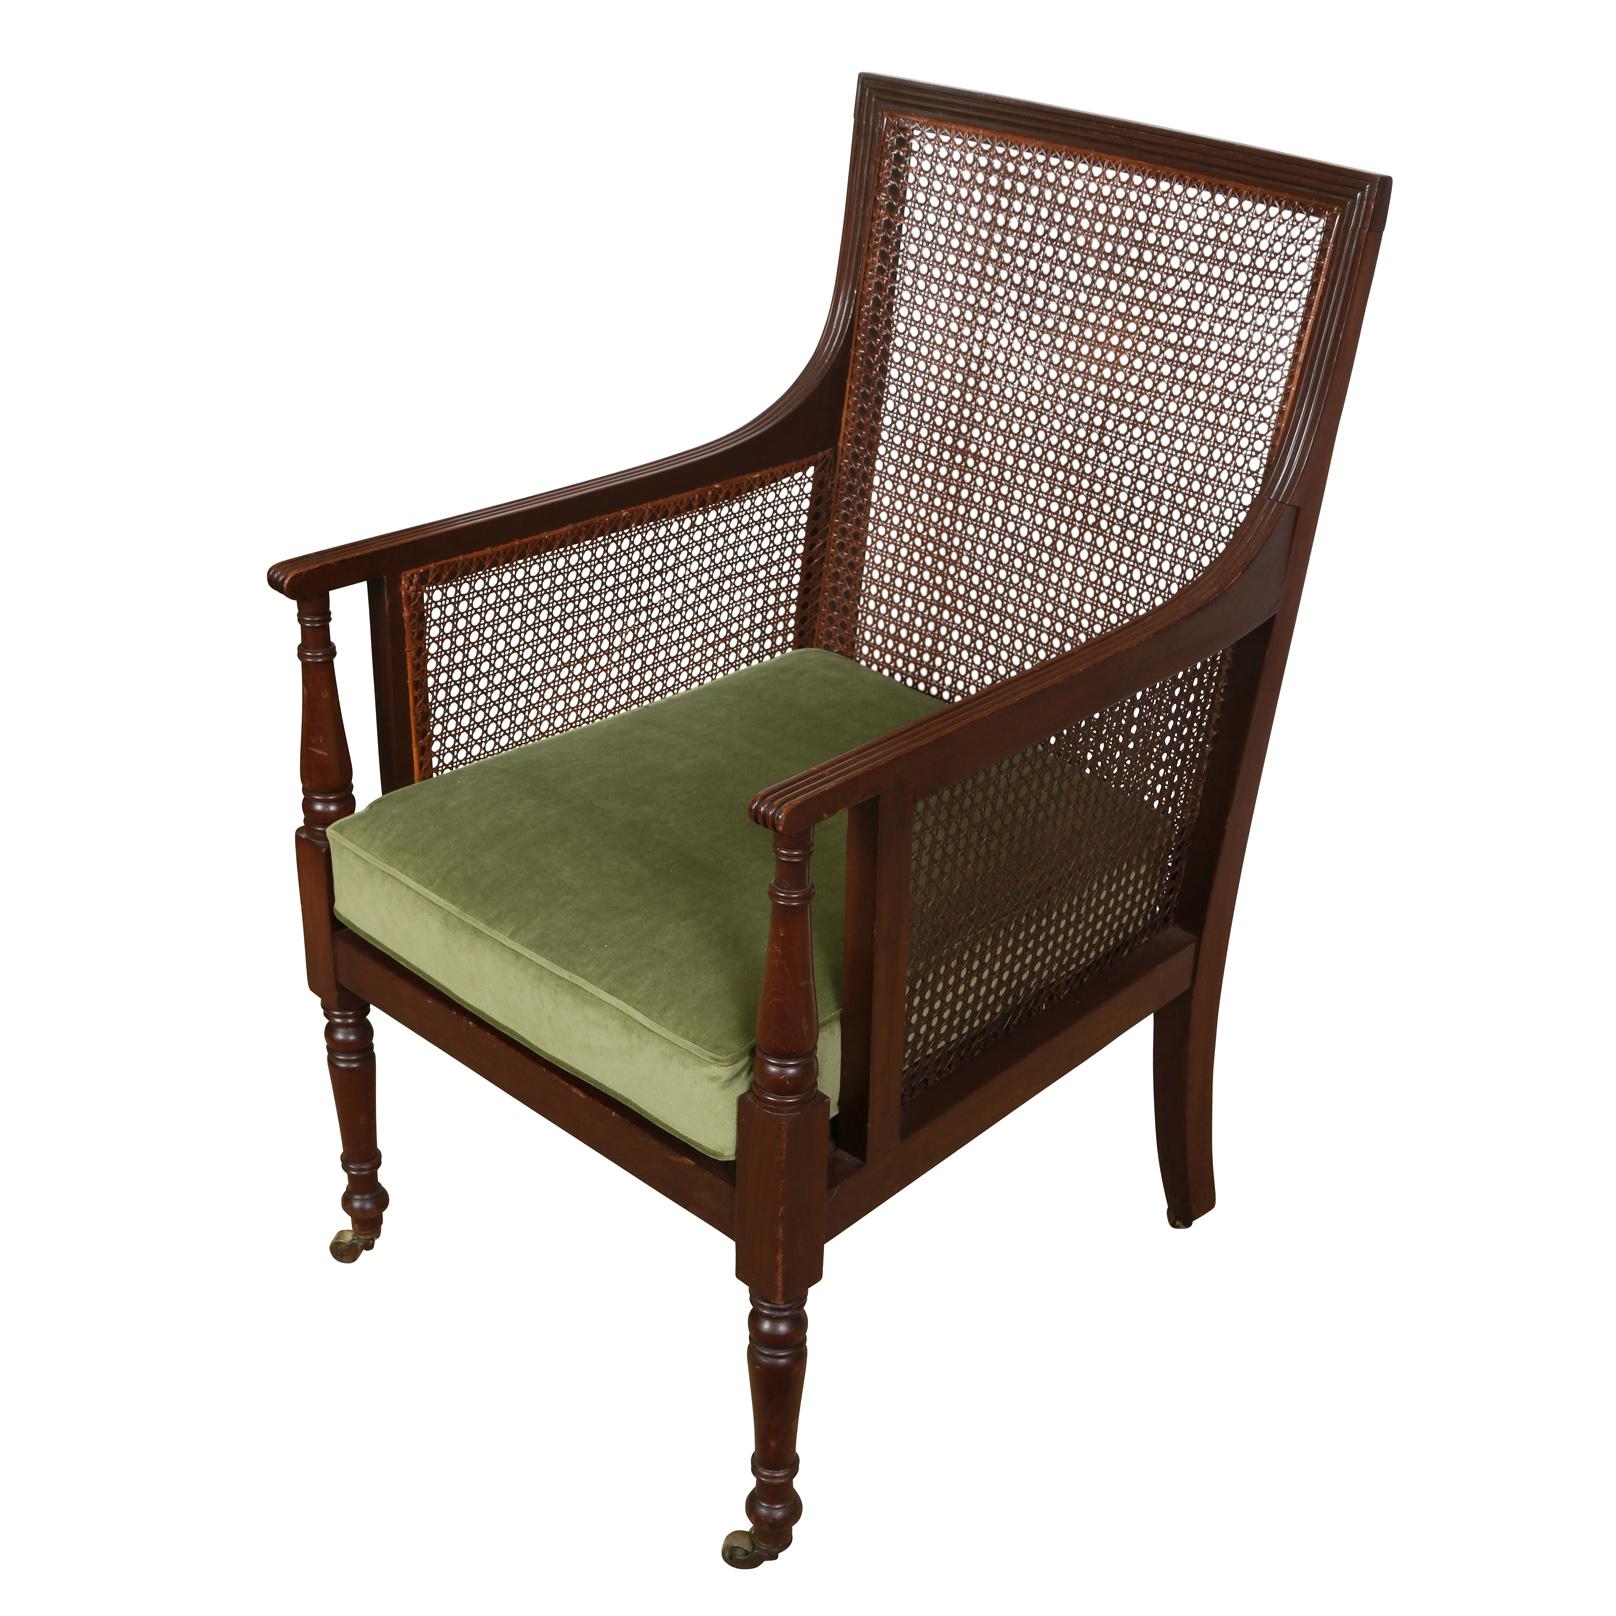 Ein stattlicher Stuhl im Regency-Stil mit geradem Rahmen, geriffelten Seiten und Rücken, geriffelten Armlehnen und gedrechselten Beinen, die sich bis zu den Armlehnen fortsetzen und auf Rollen an der Basis enden. Die Sitzfläche des Stuhls ist neu